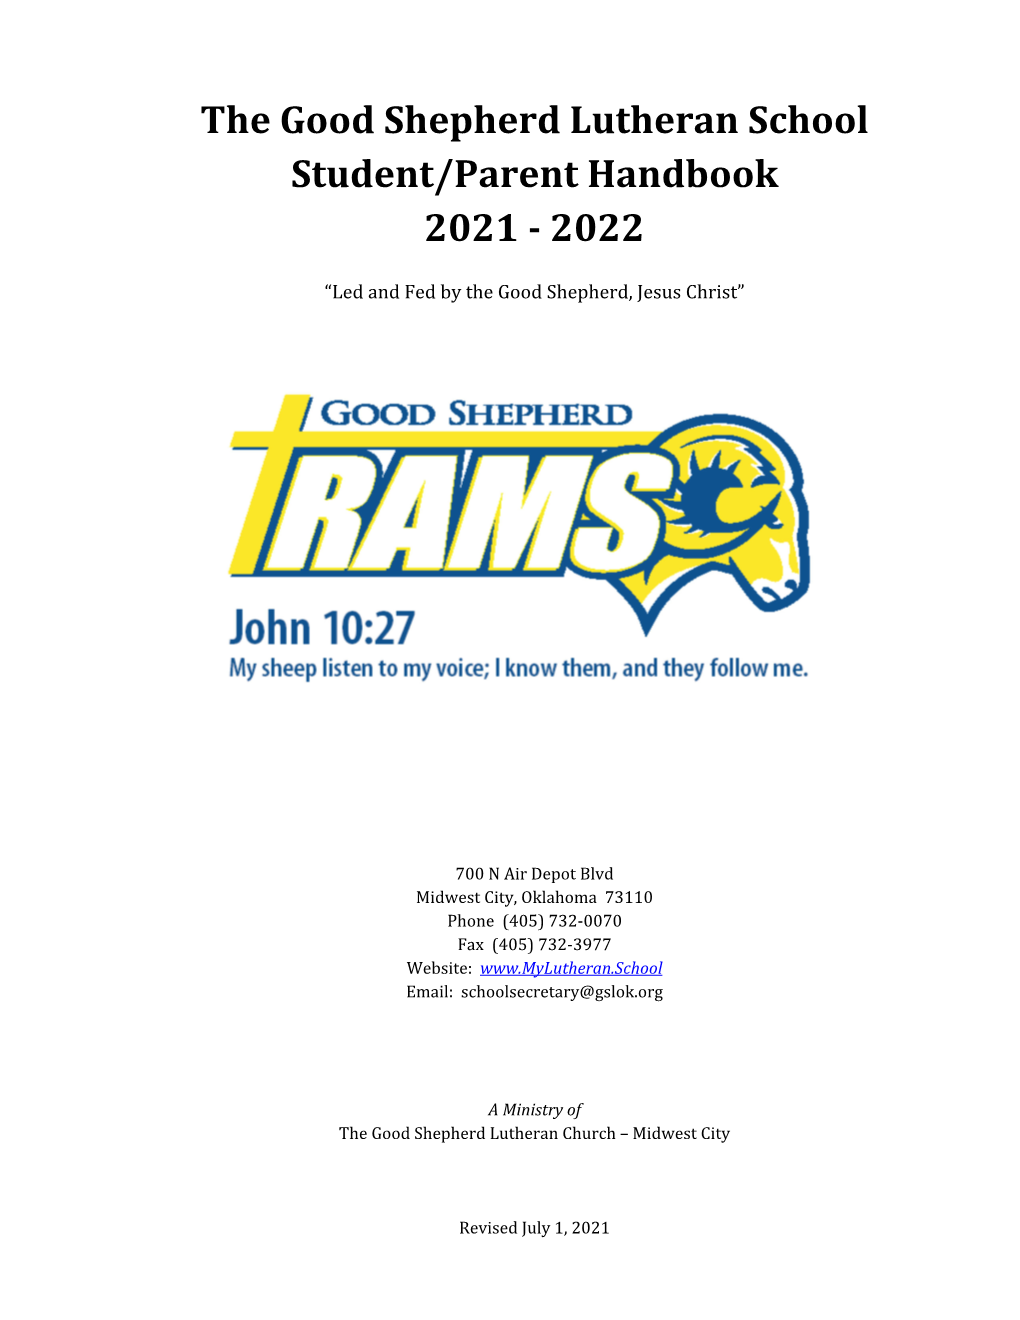 The Good Shepherd Lutheran School Student/Parent Handbook 2021 ‐ 2022